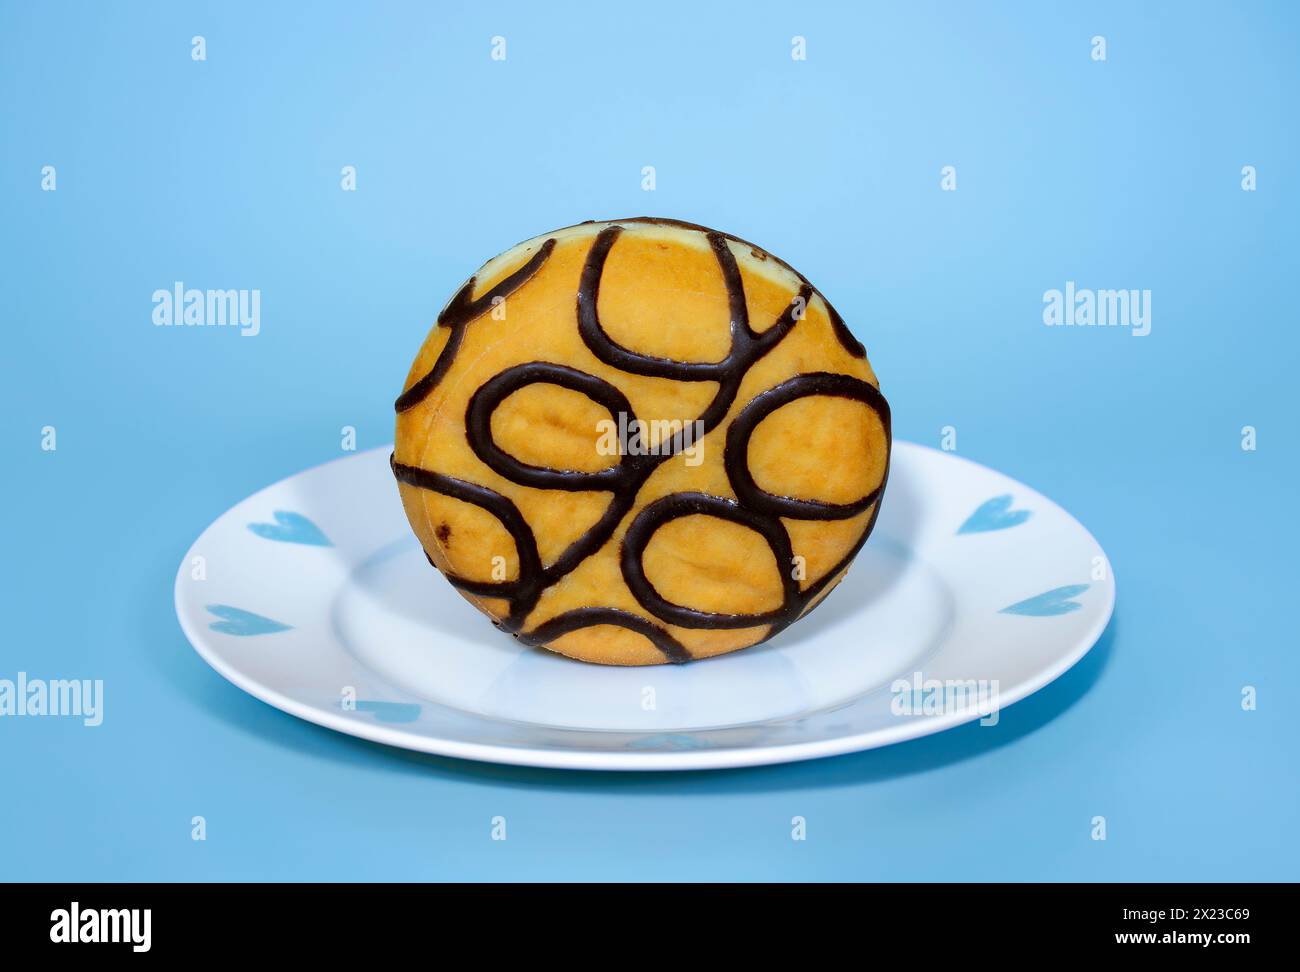 Mit Schokolade gefüllter Donut stehend auf einem hübschen blau-weißen Teller, auf blauem Hintergrund Stockfoto